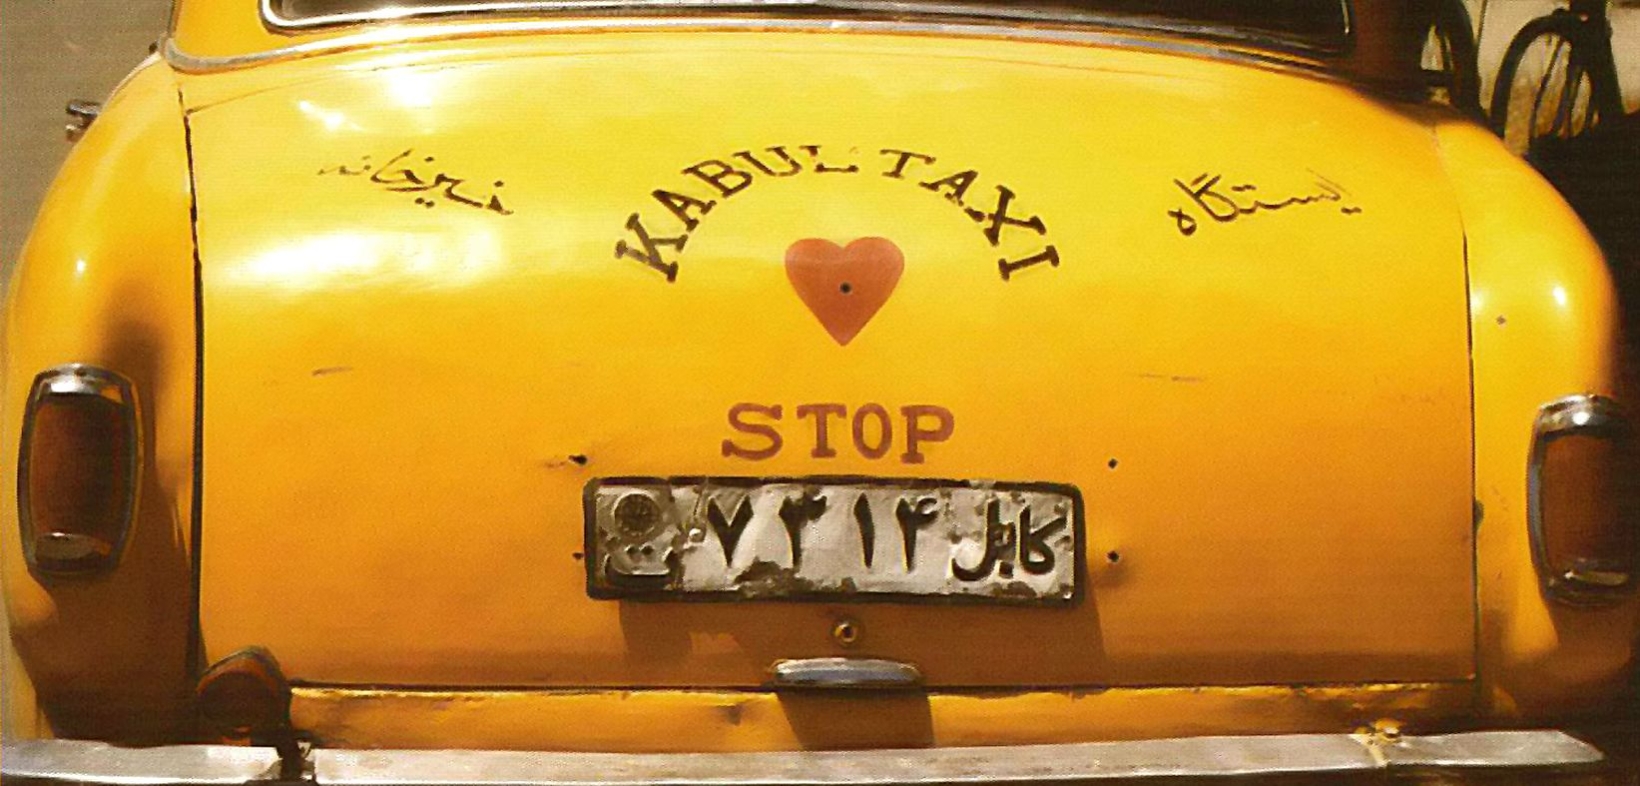 Rückansicht eines gelben Taxis mit der Aufschrift "Kabul-Taxi" und "Stop" und einem roten Herz